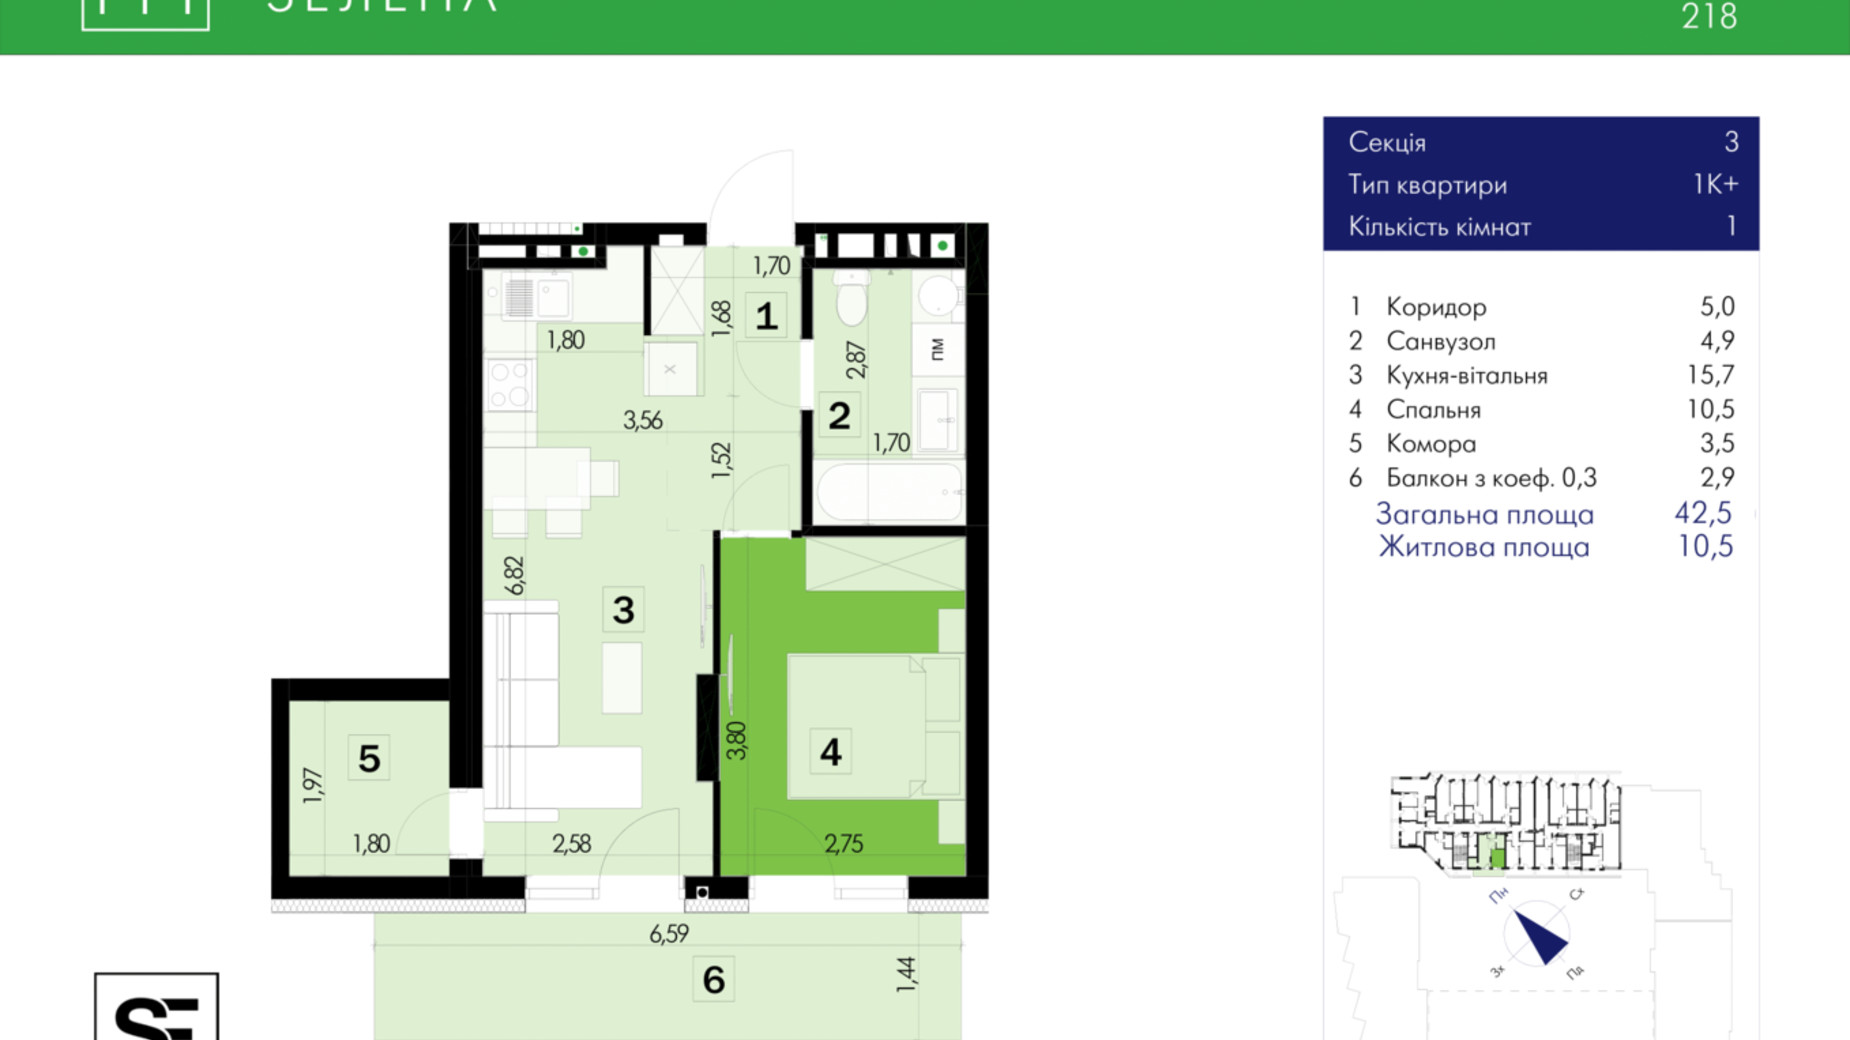 Планировка 1-комнатной квартиры в ЖК 111 Zelena 42.5 м², фото 634018